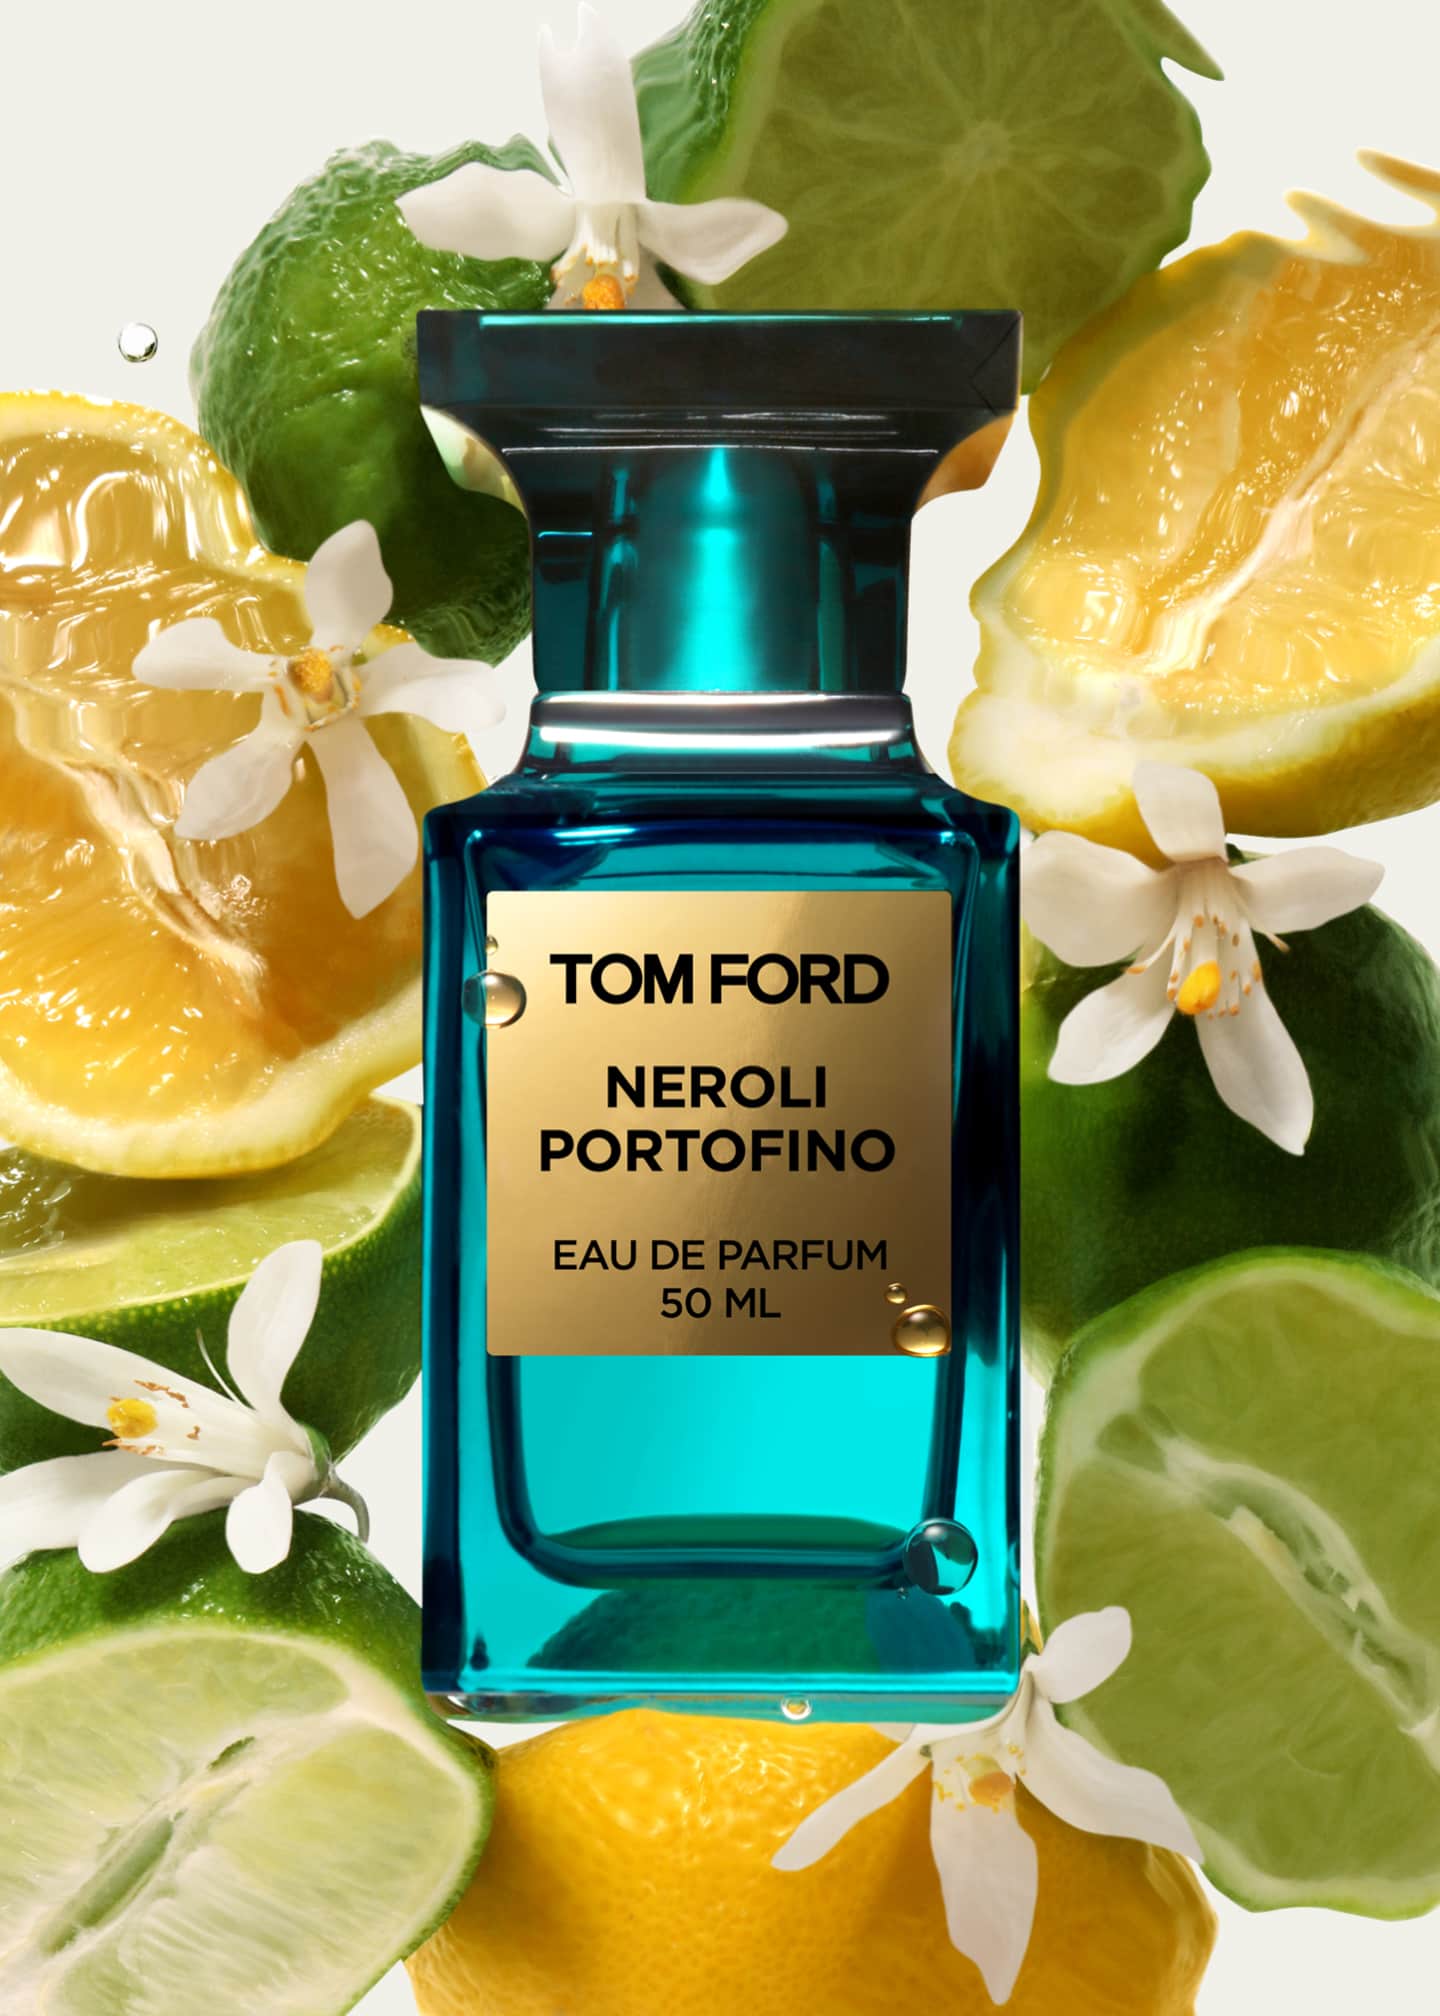 TOM FORD Neroli Portofino Travel Spray,  oz./ 10 mL - Bergdorf Goodman